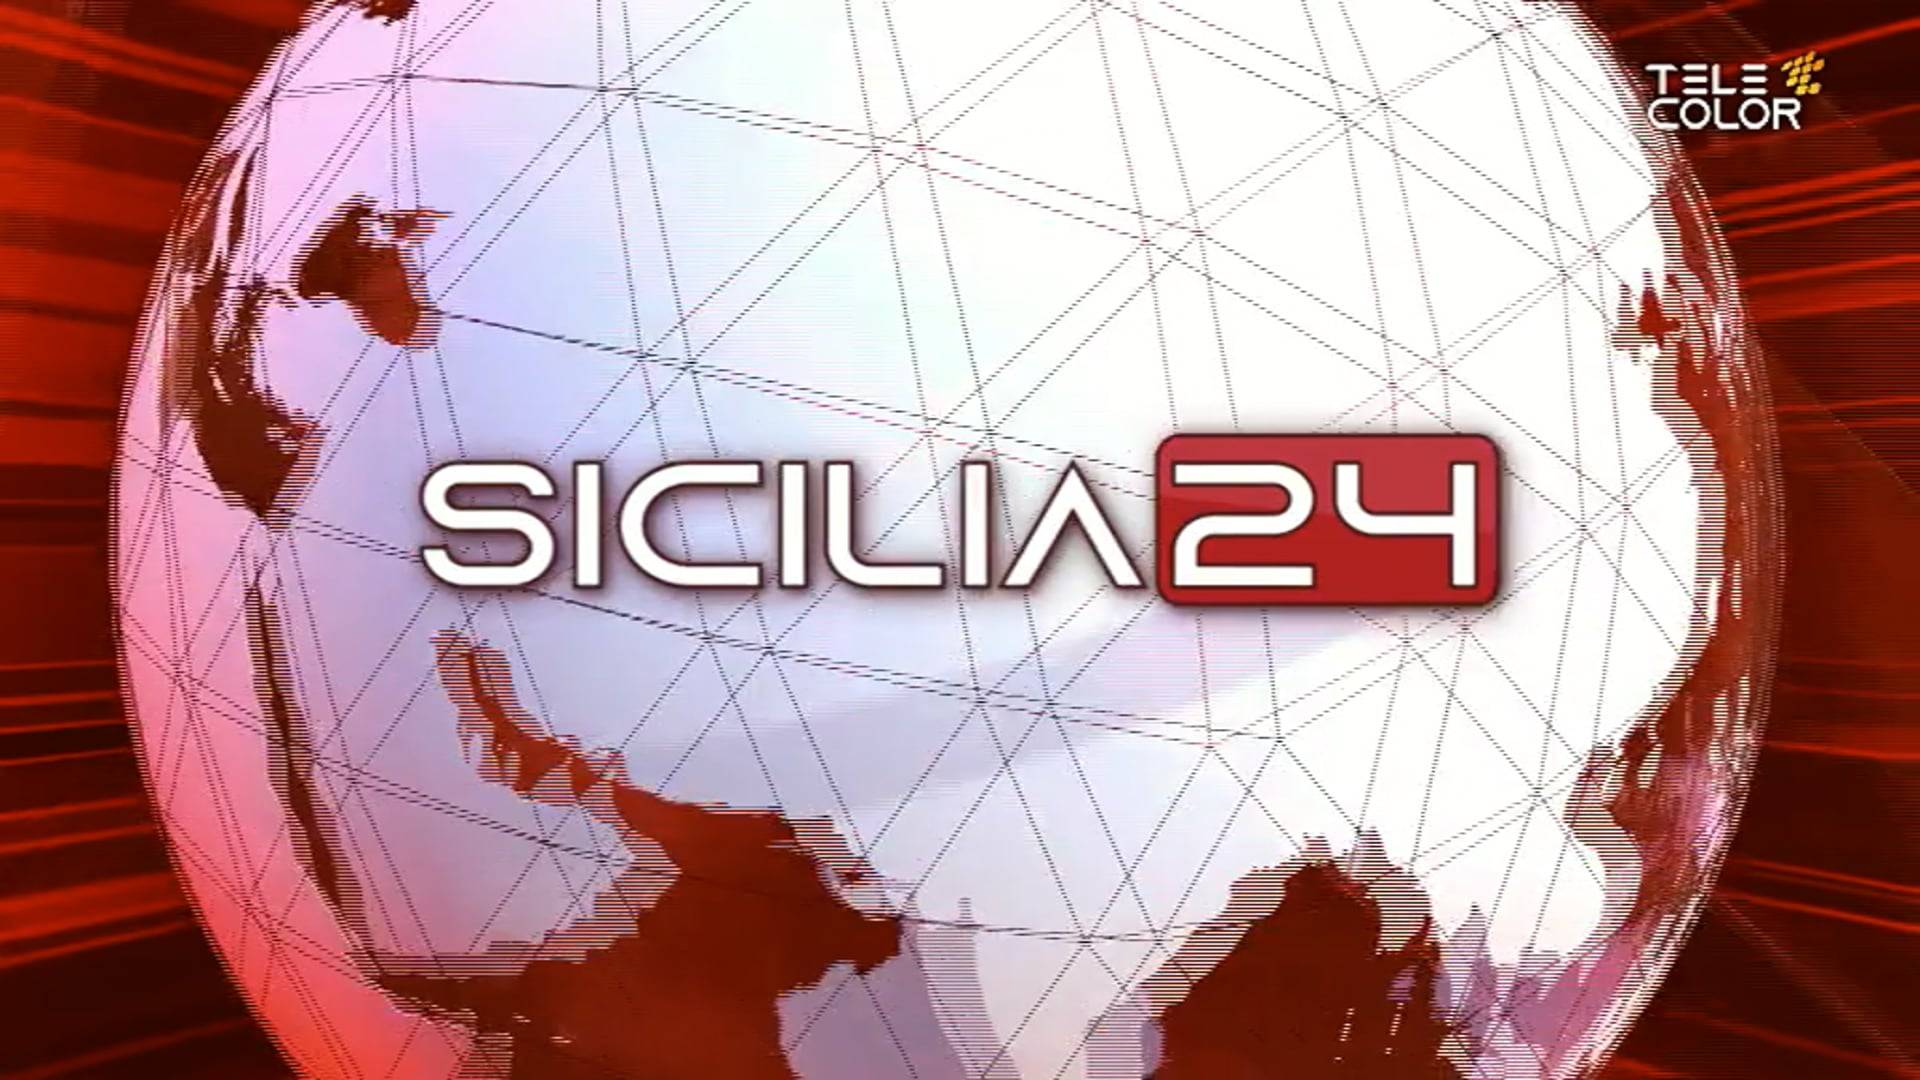 sicilia24-rassegna-stampa-26-aprile-2022-vimeo-thumbnail.jpg